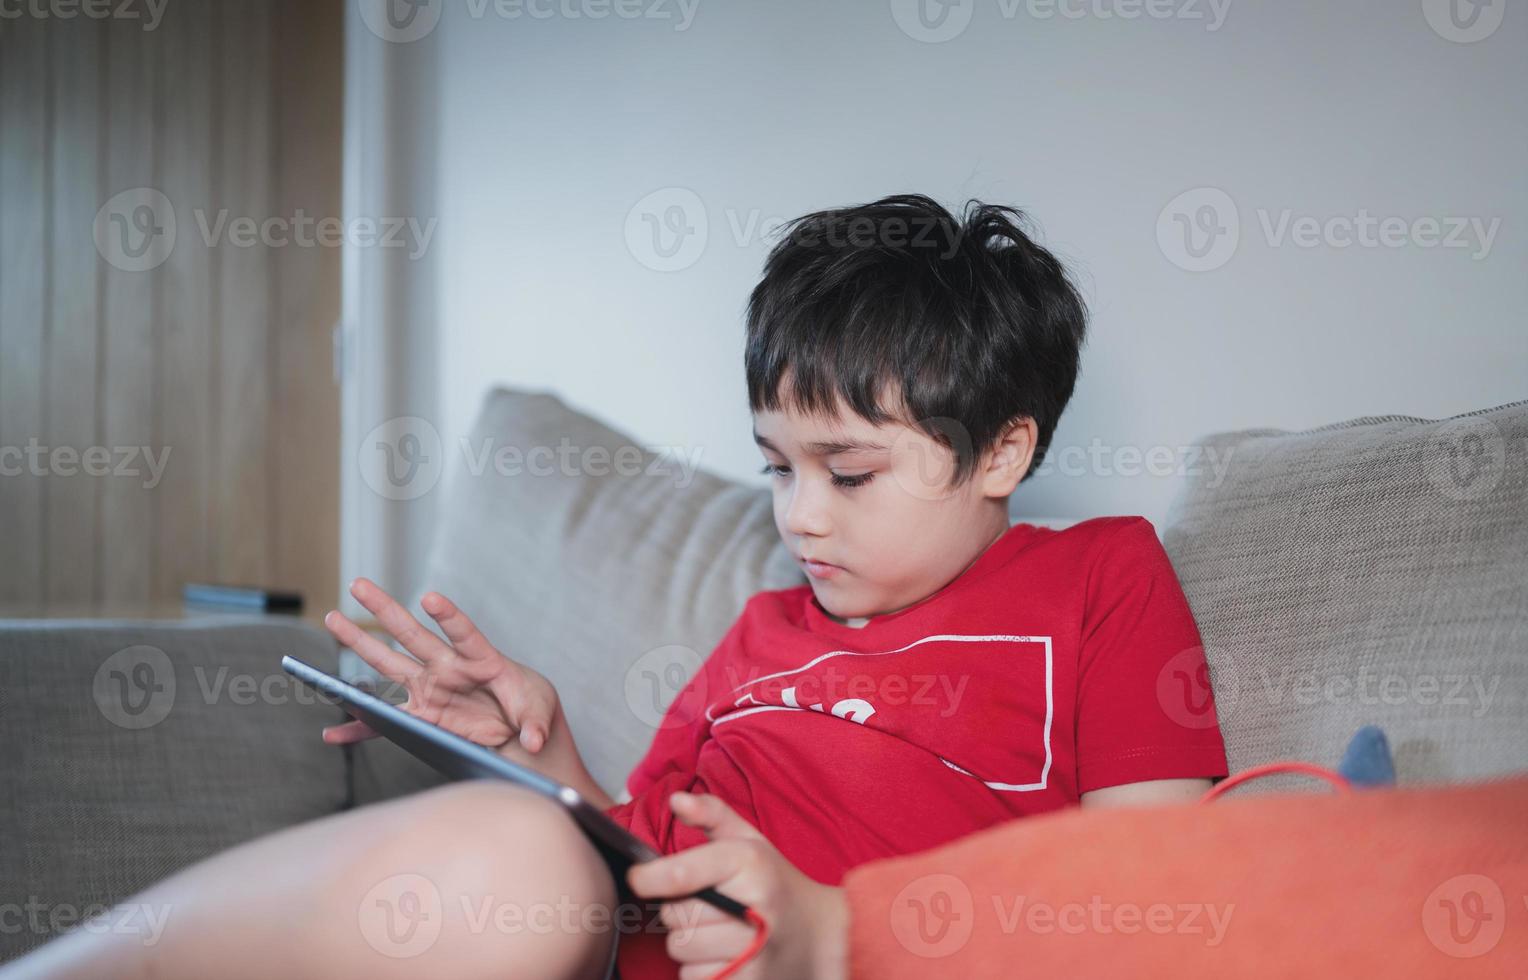 criança sentada no sofá assistindo desenho animado ou jogando no tablet, criança usando almofada digital aprendendo lição on-line na internet, educação em casa, conceito de educação on-line de ensino a distância foto